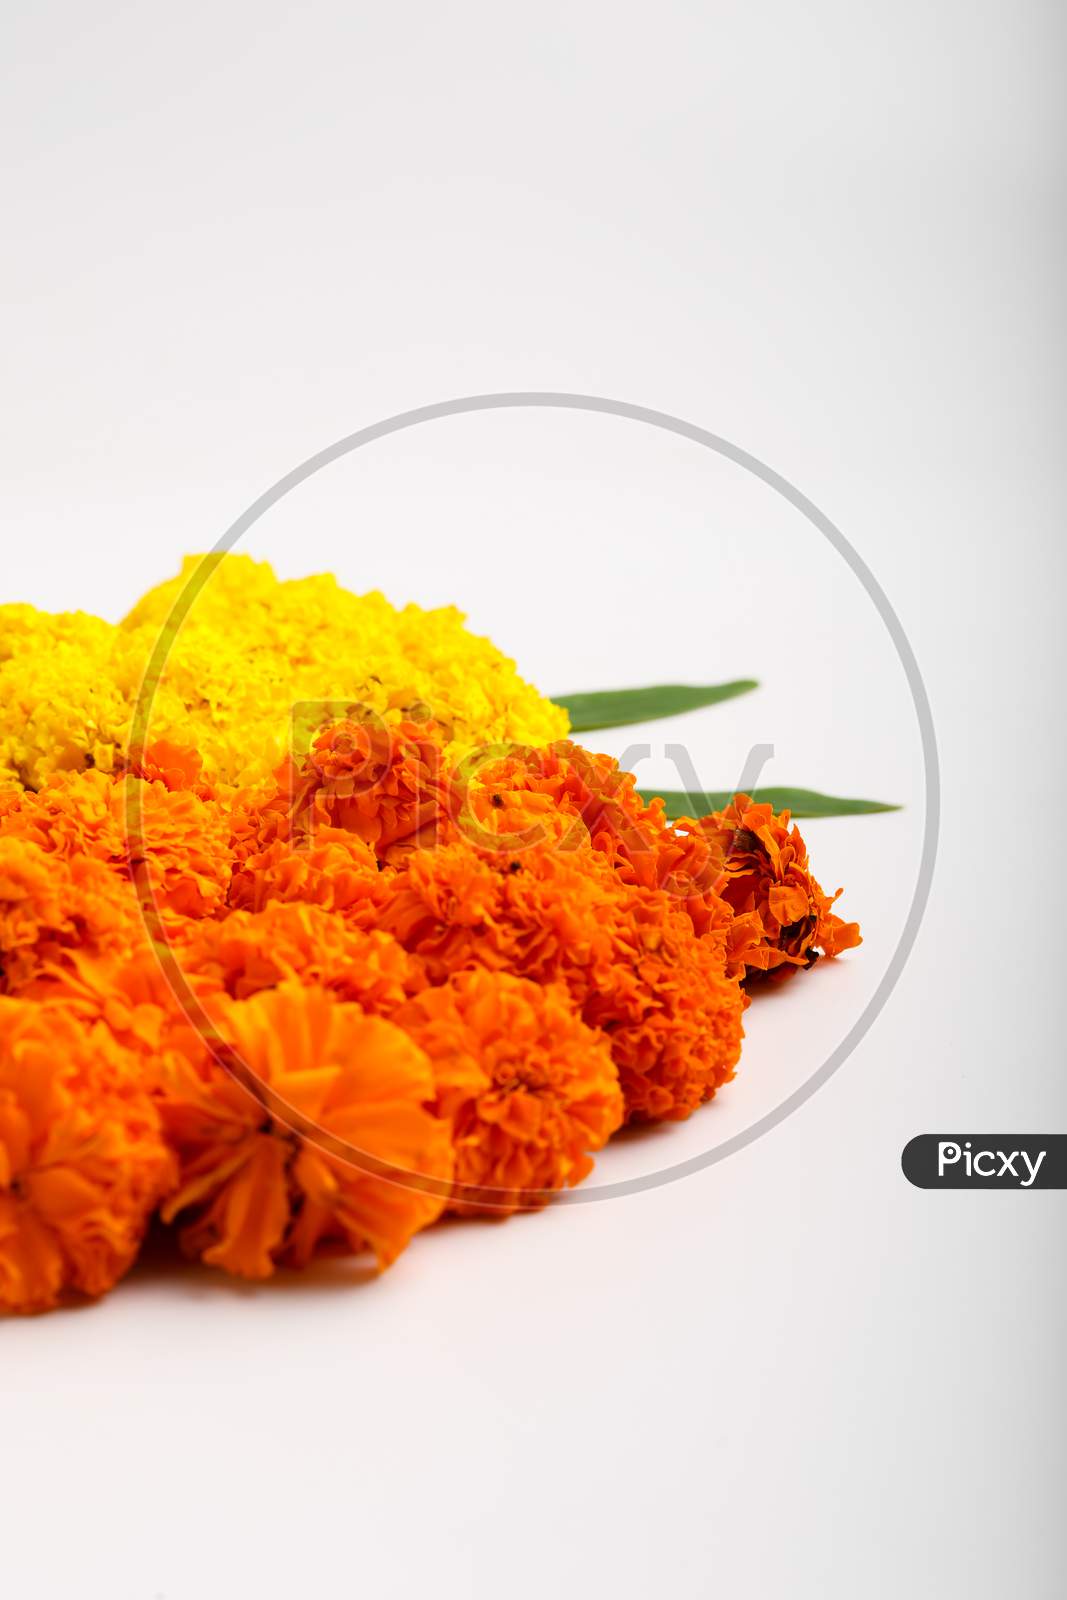 Marigold Flower Rangoli Design For Diwali Festival , Indian Festival Flower Decoration